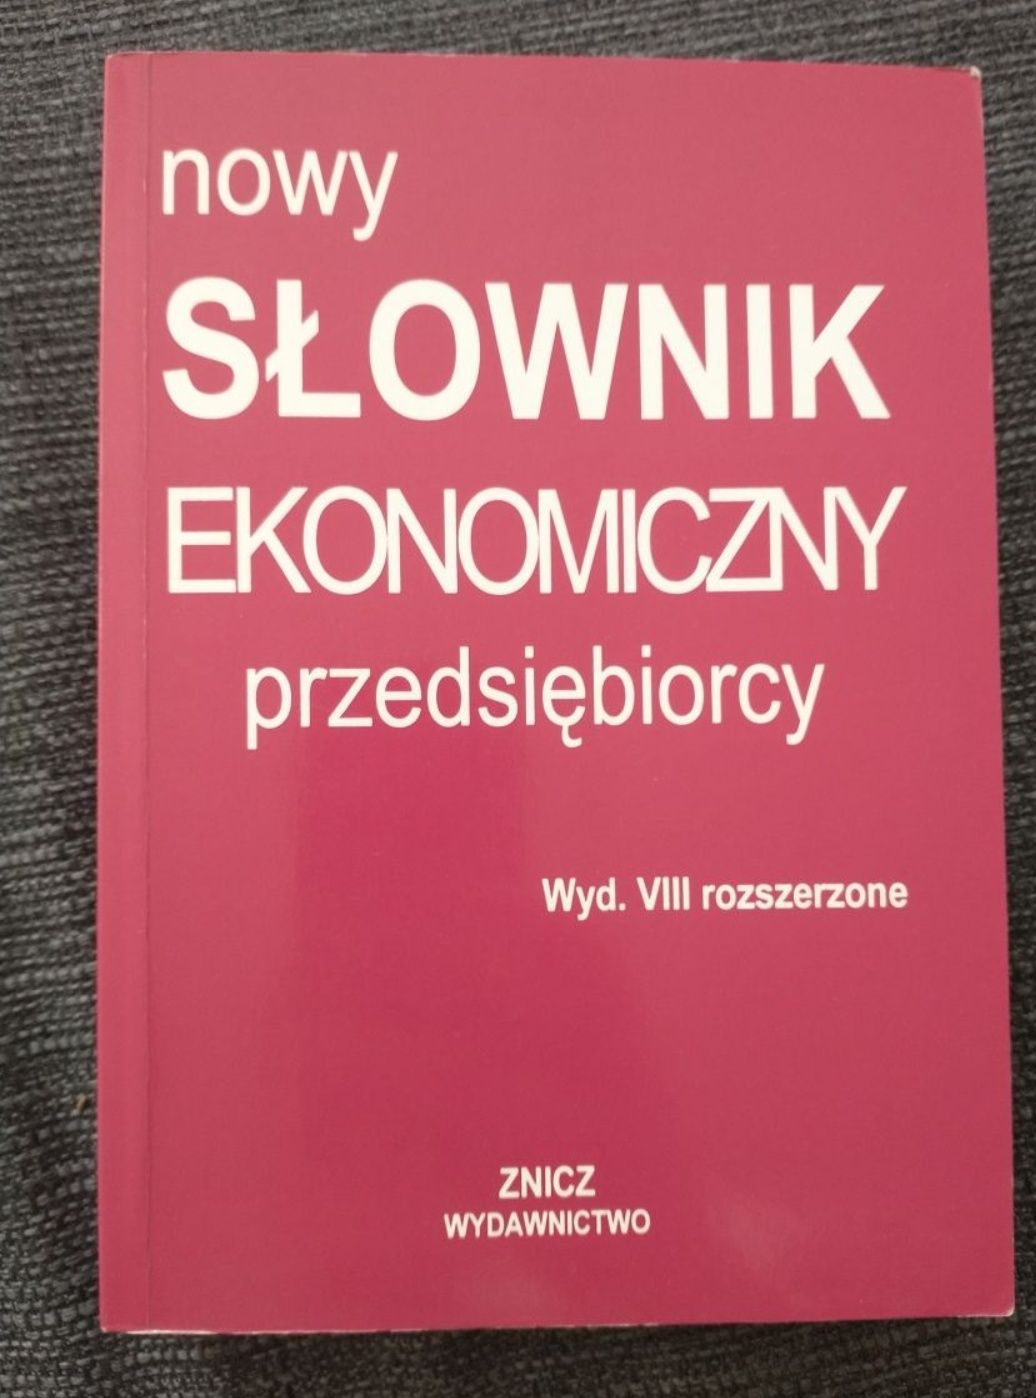 Nowy słownik ekonomiczny, wyd. VIII Dowgiałło, 2004 rok